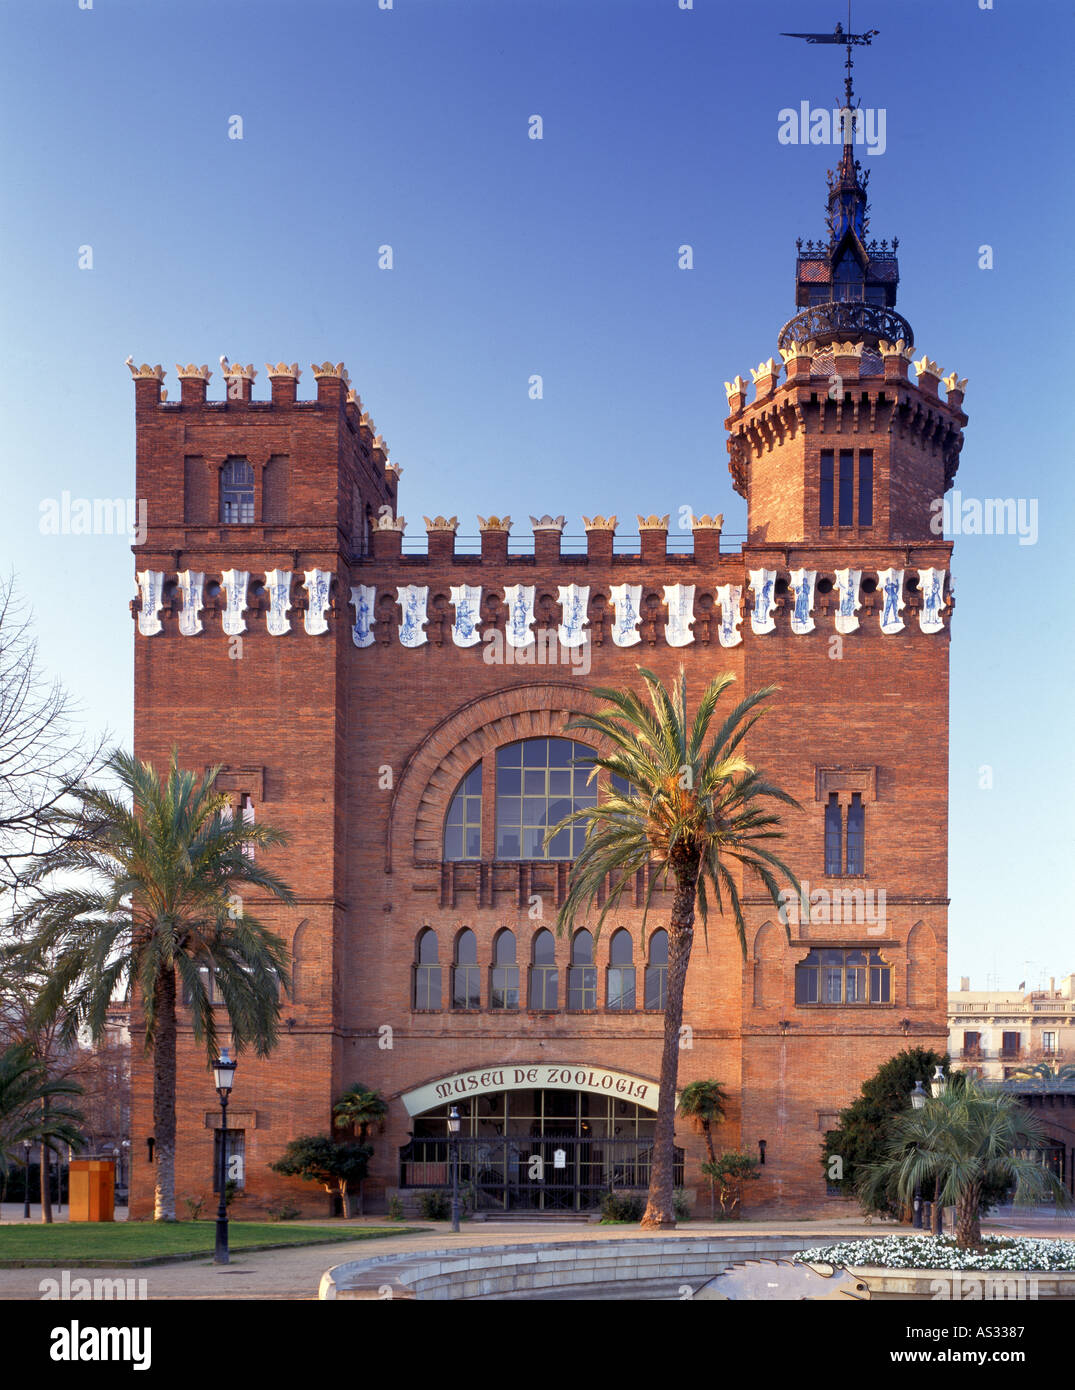 Barcellona, Parque de la Ciutadella , Museo de Zoologia, Architekt: Lluis Domenech i Montaner Foto Stock